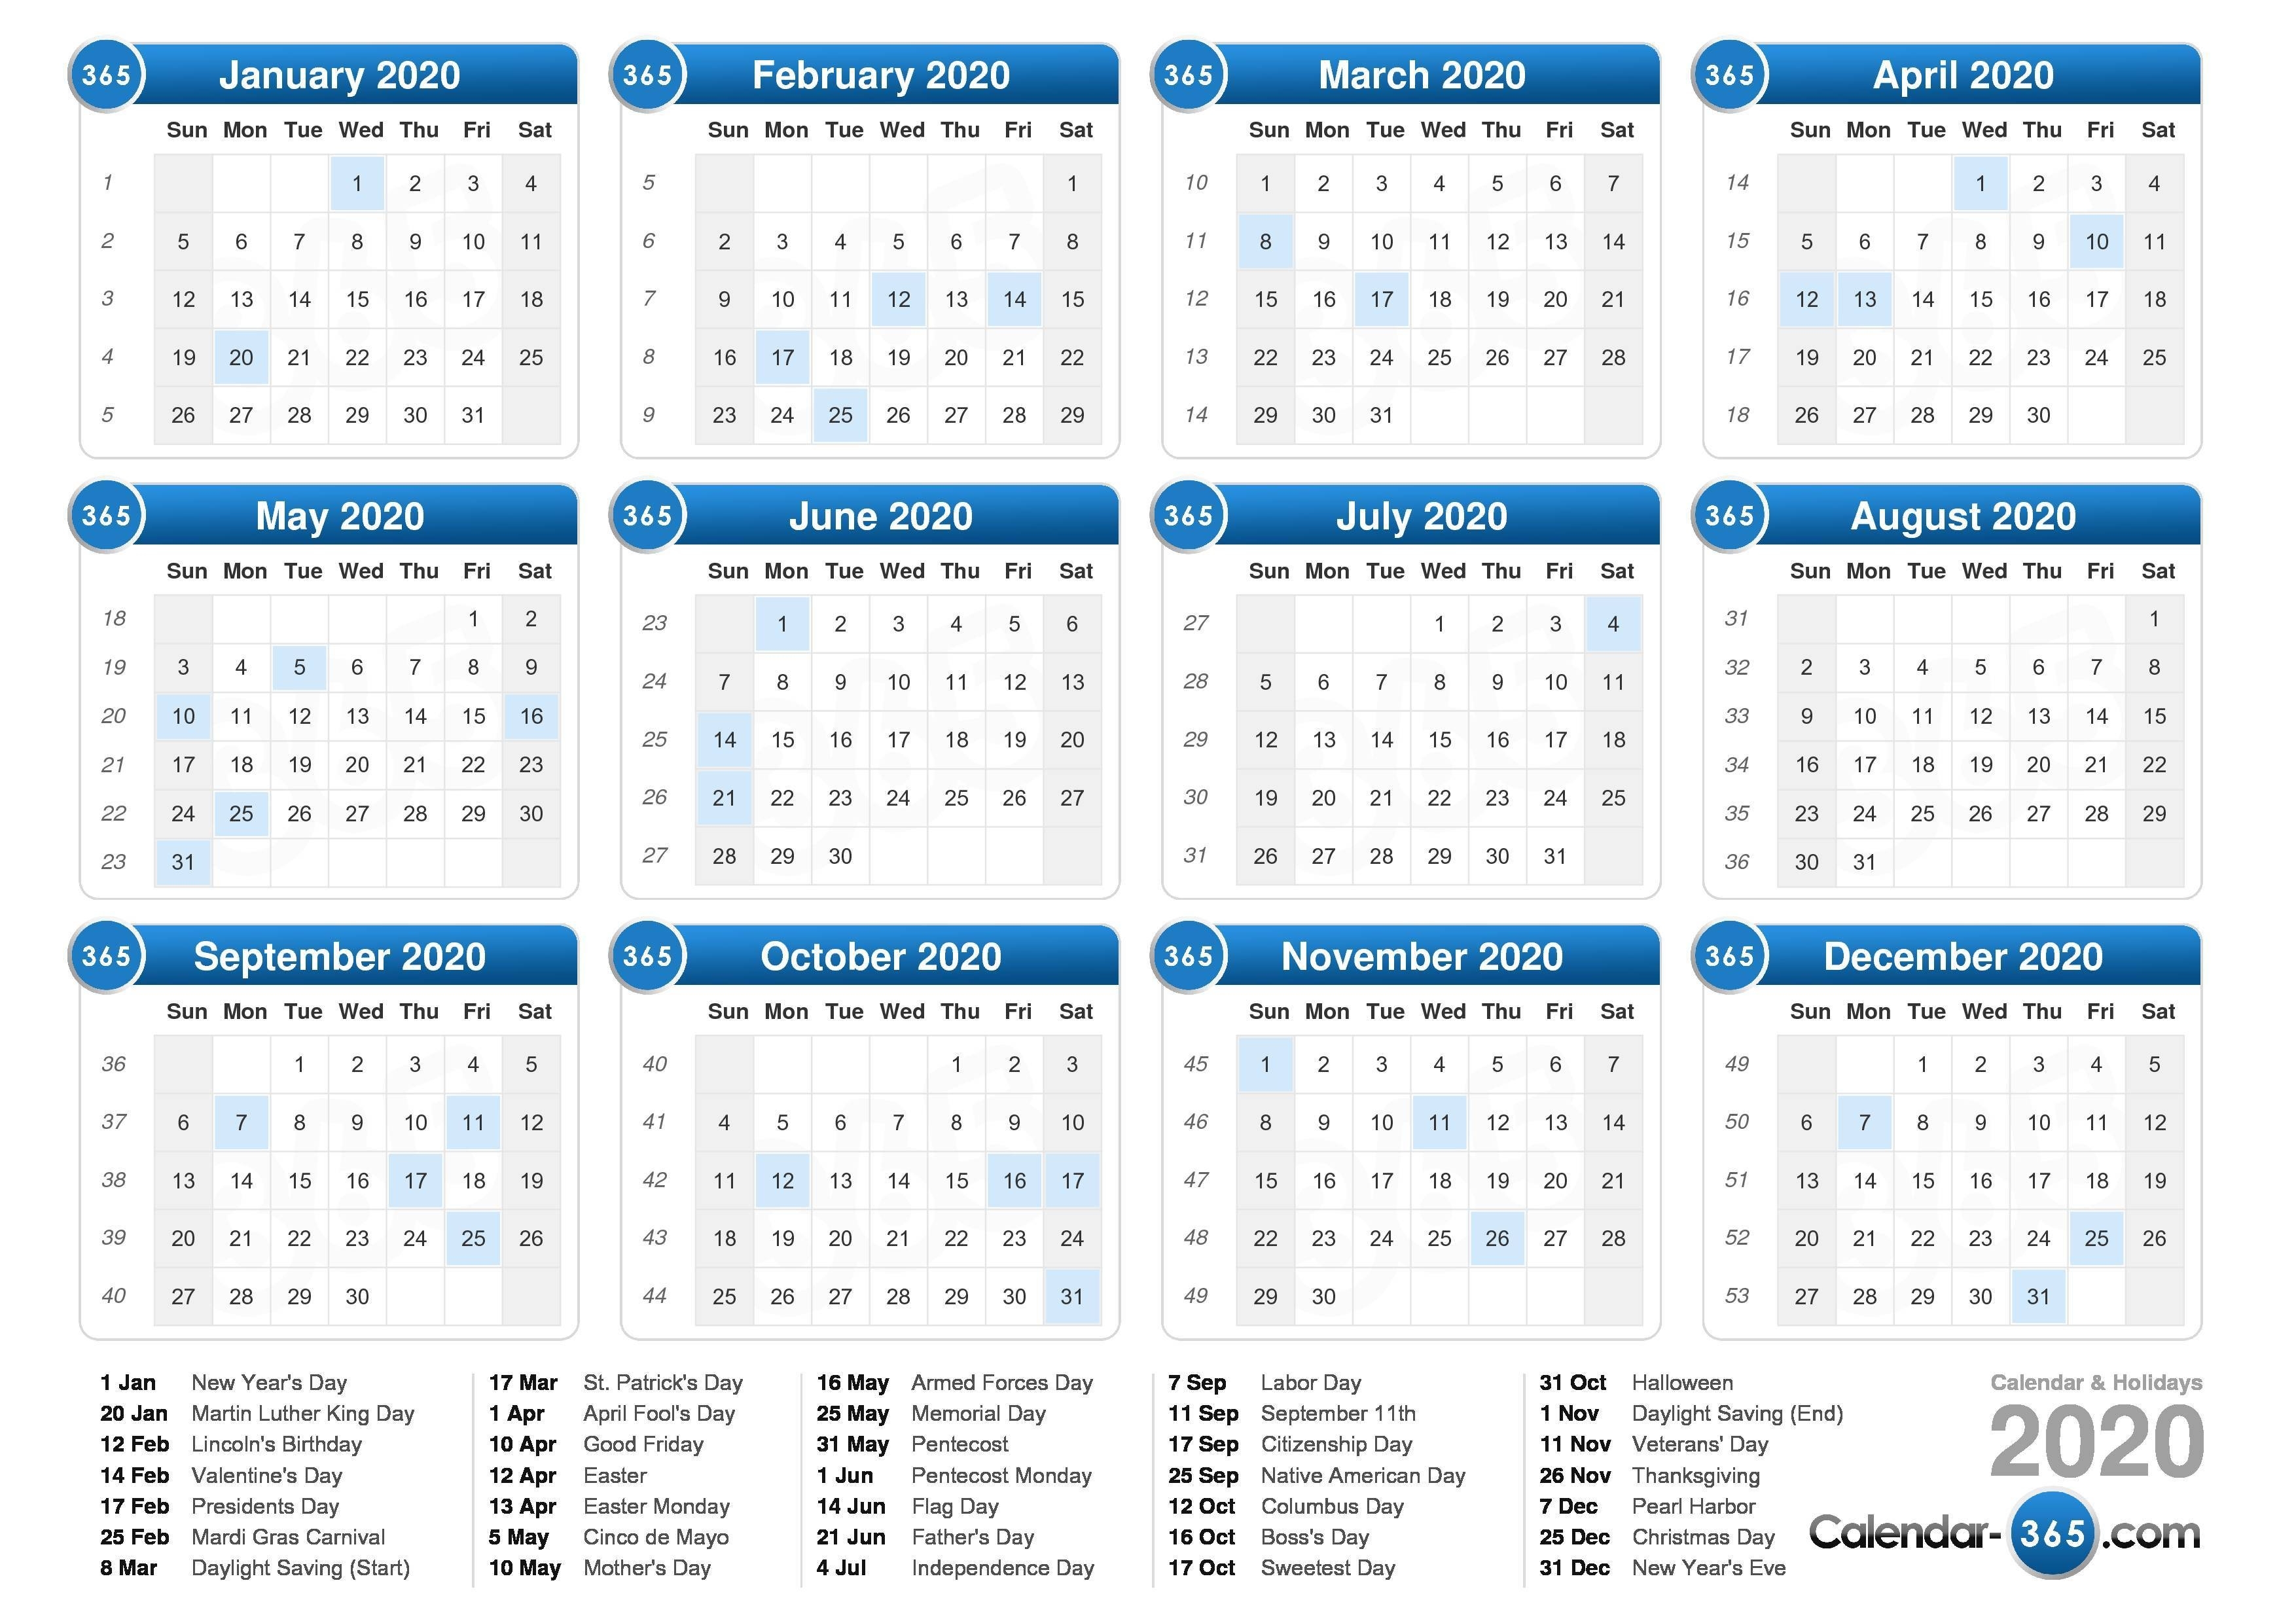 2020 Calendar-Singapore 2020 Calendar With Holidays